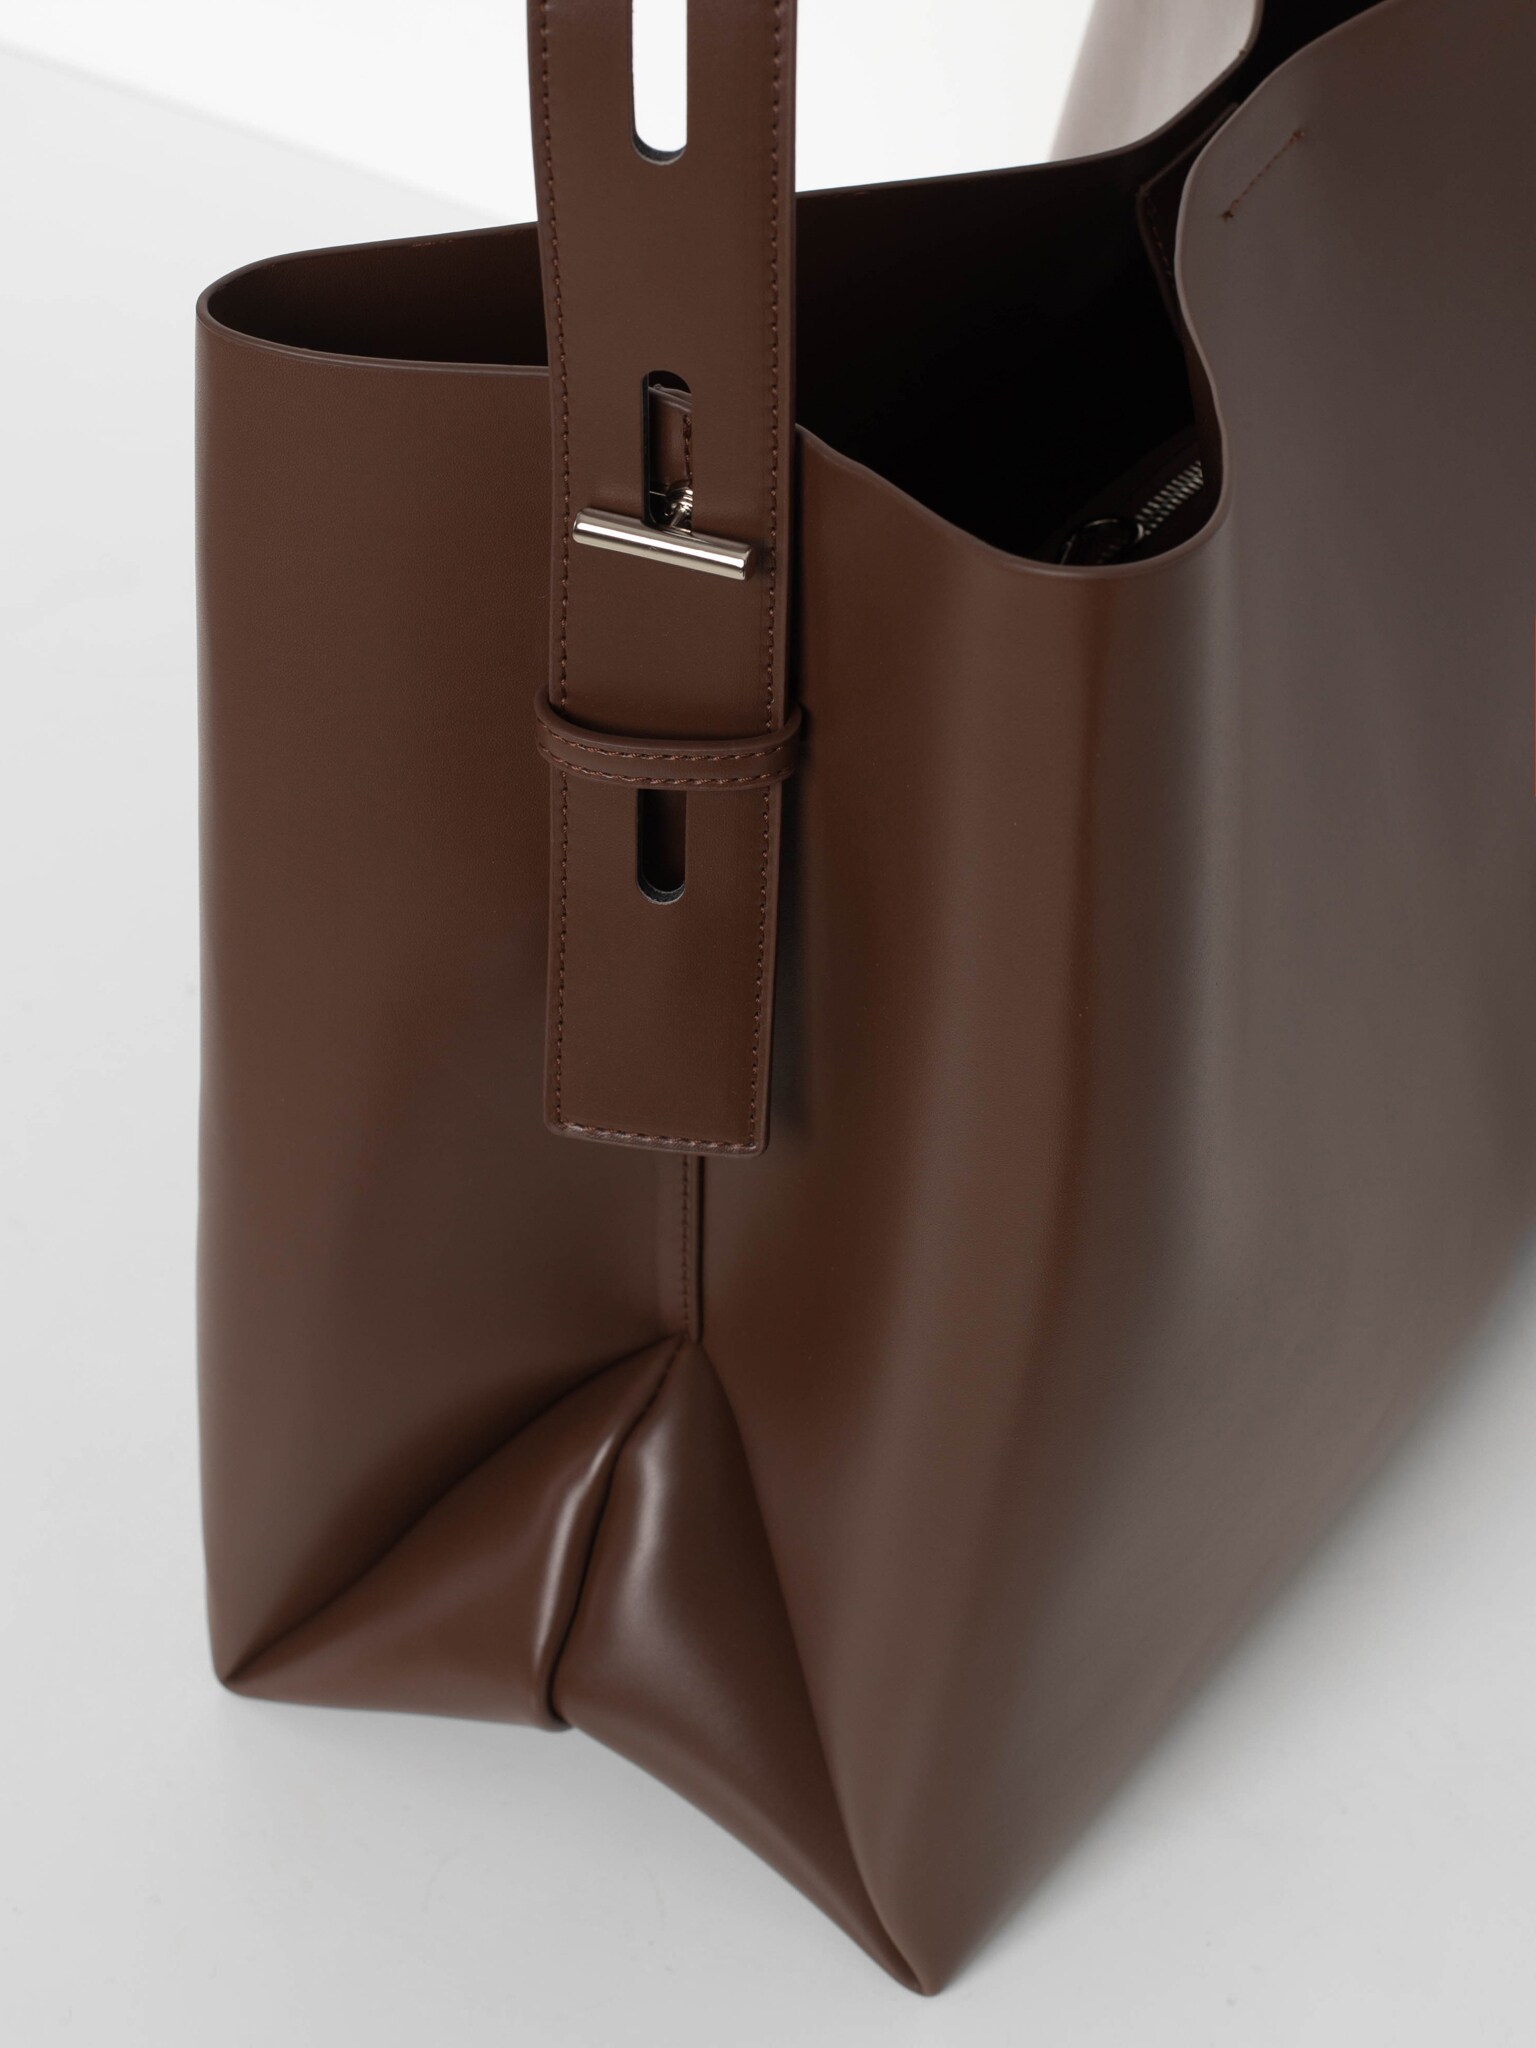 Прямоугольная сумка мягкой формы с широким ремнем